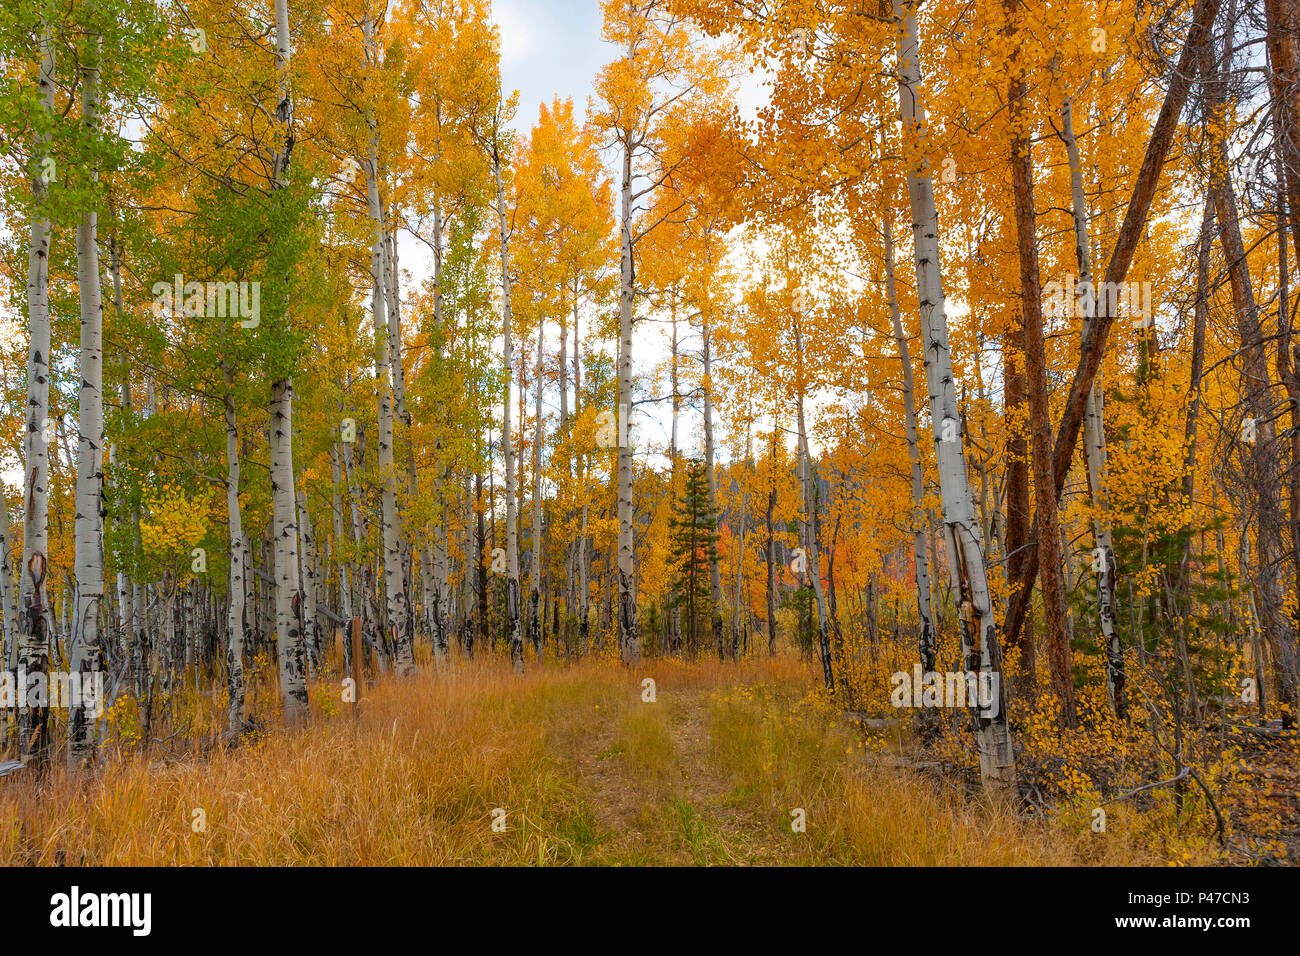 Il picco della caduta di aspen produce colori multible sfumature di giallo che semplicemente disegna il tuo occhio a questo Rocky Mountain prato. Foto Stock